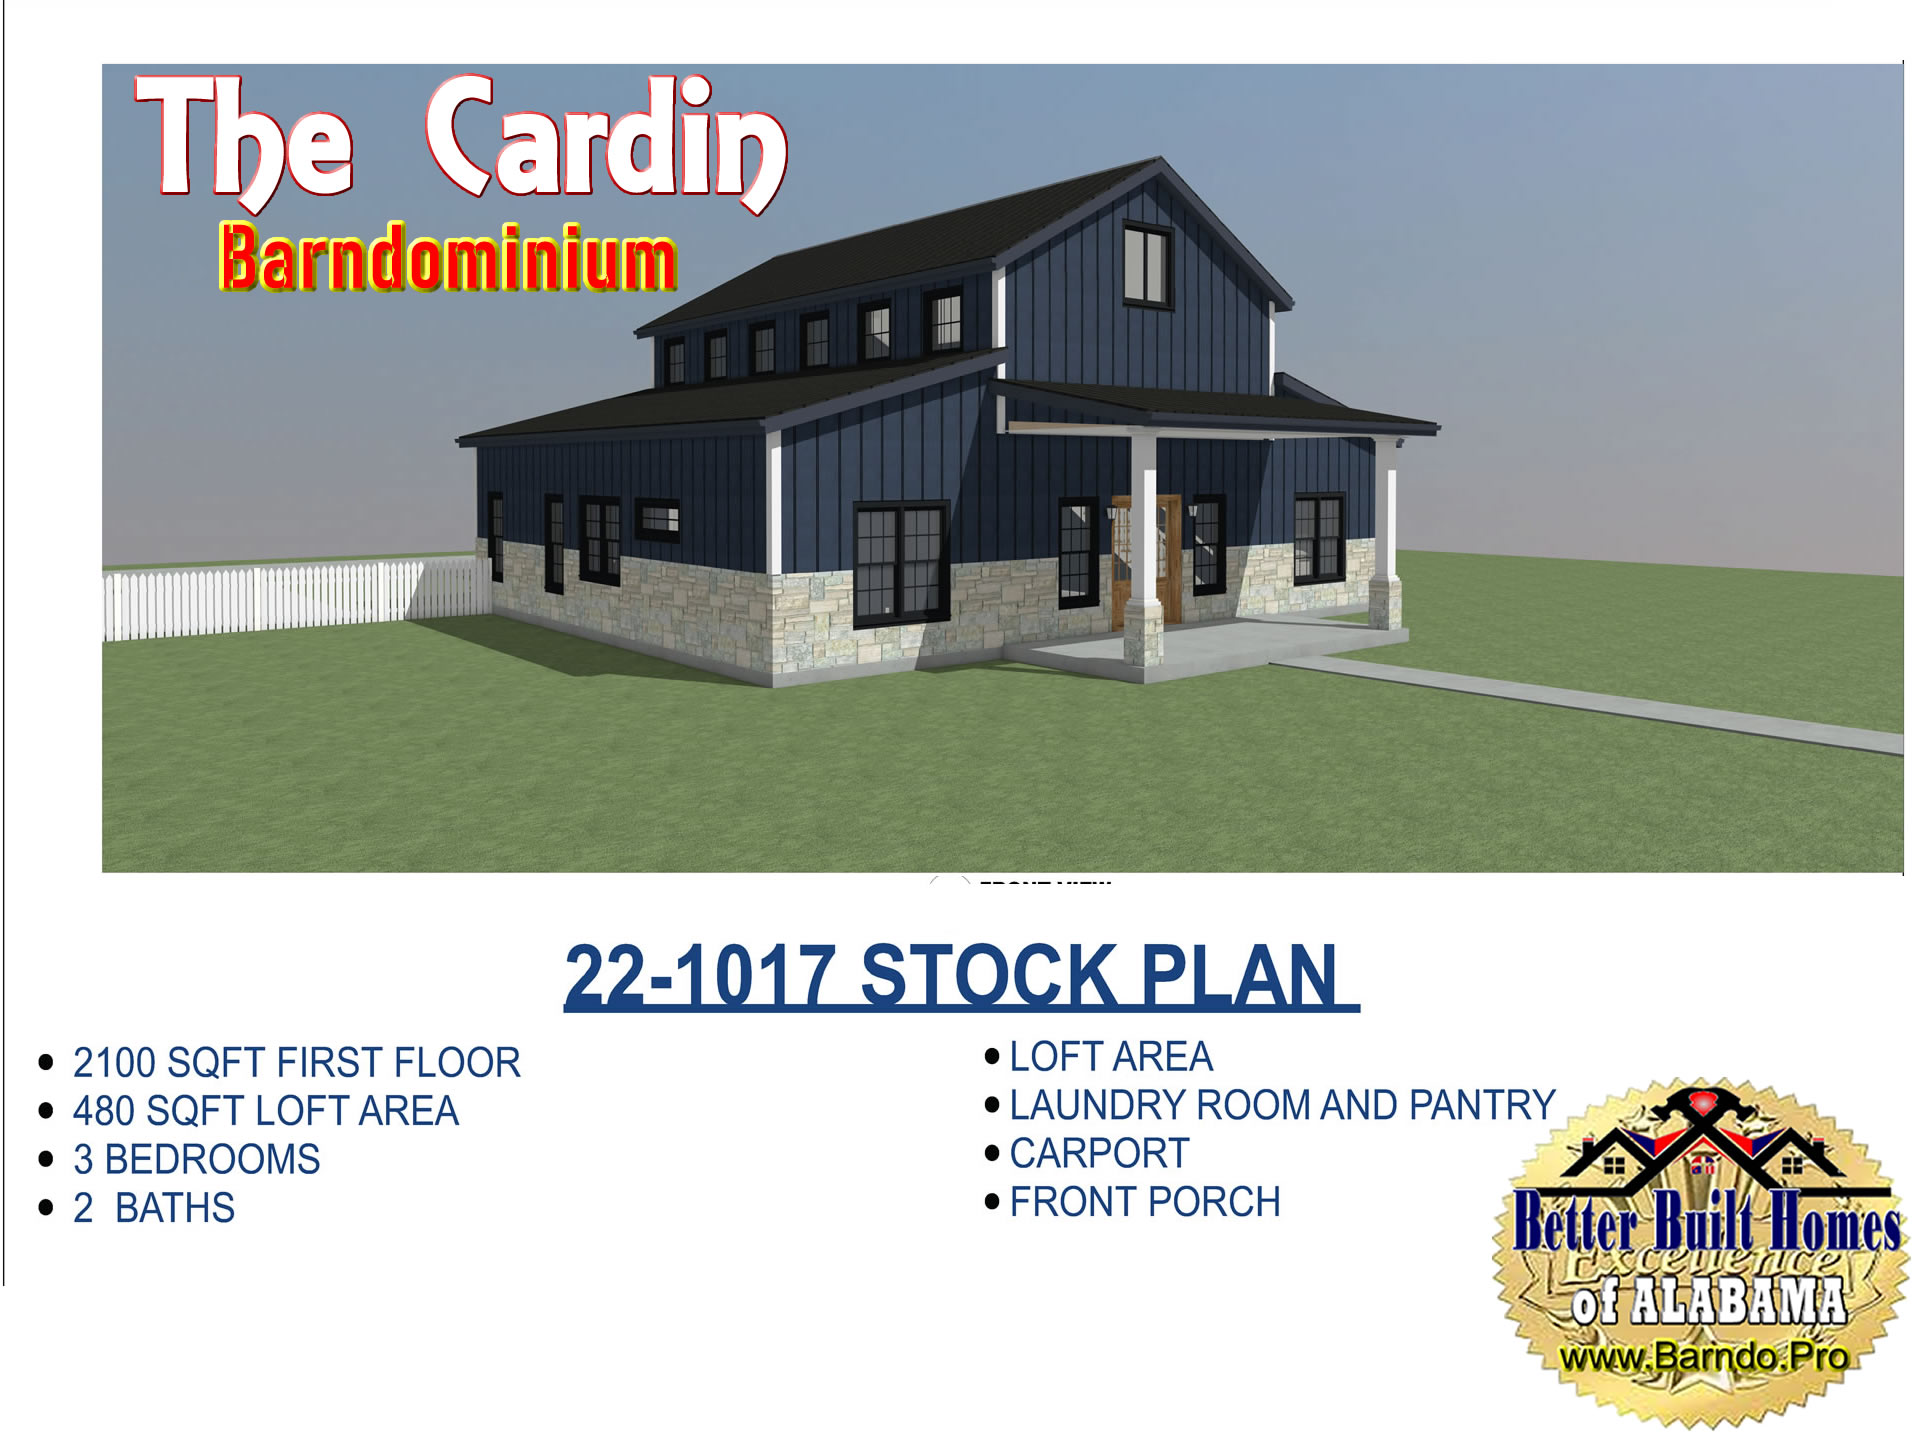 BARNDO PRO NEW FLOORPLANS THE CARDIN BARNDOMINIUM LET BETTER BUILT HOMES BUILD IT FOR YOU